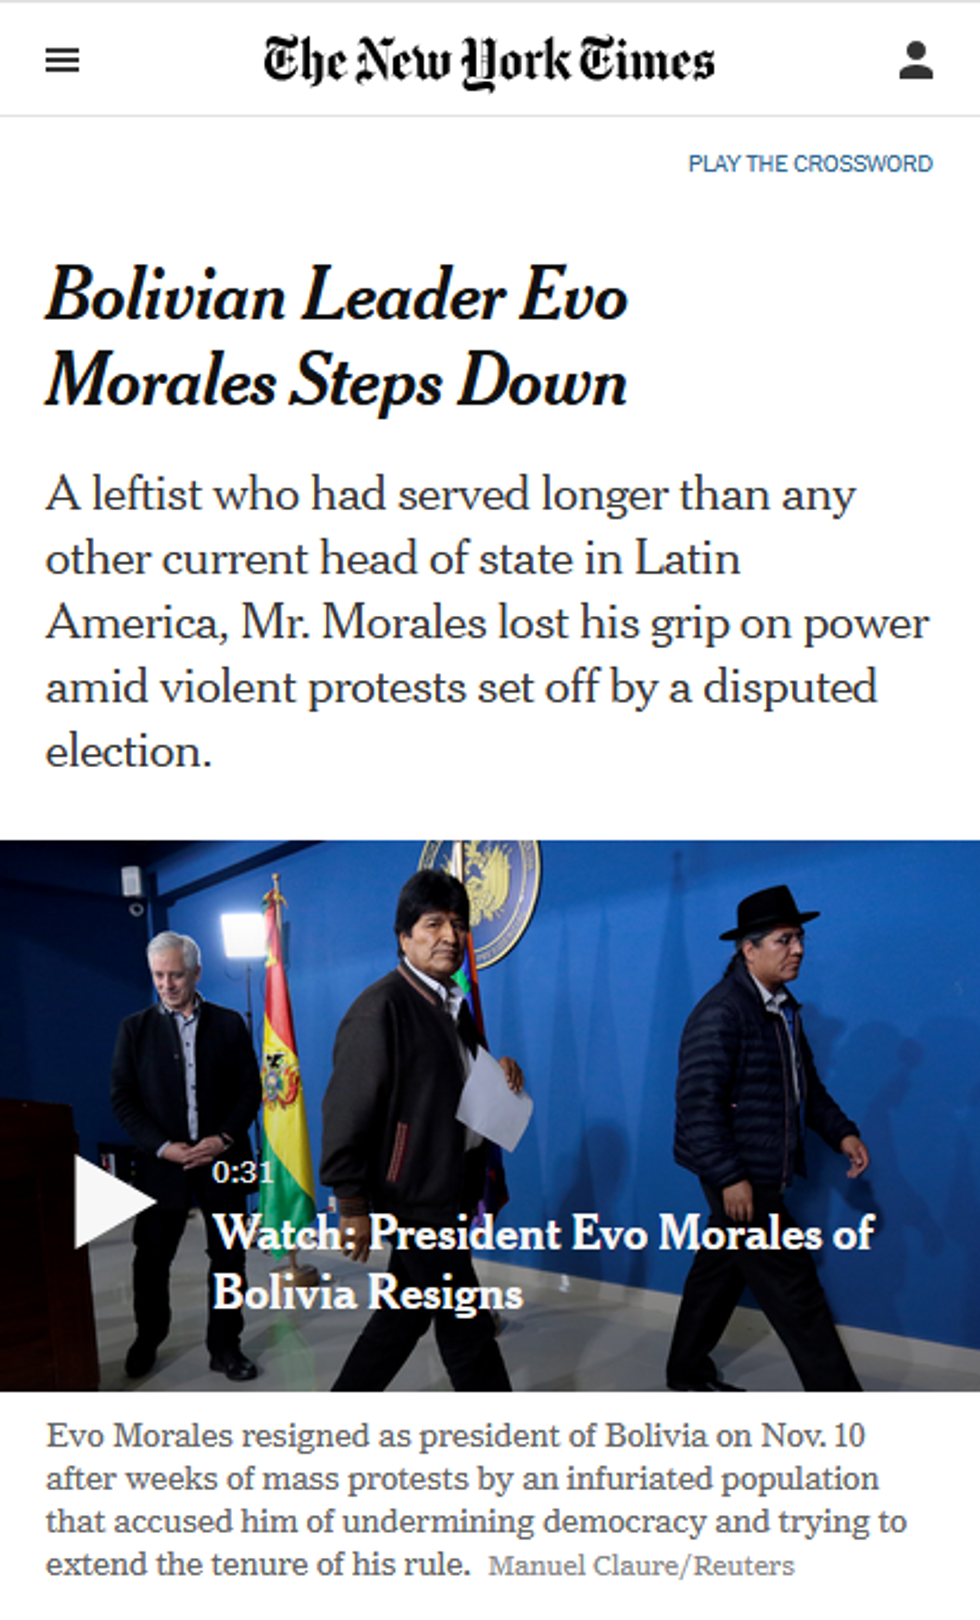 NYT: Bolivian Leader Evo Morales Steps Down